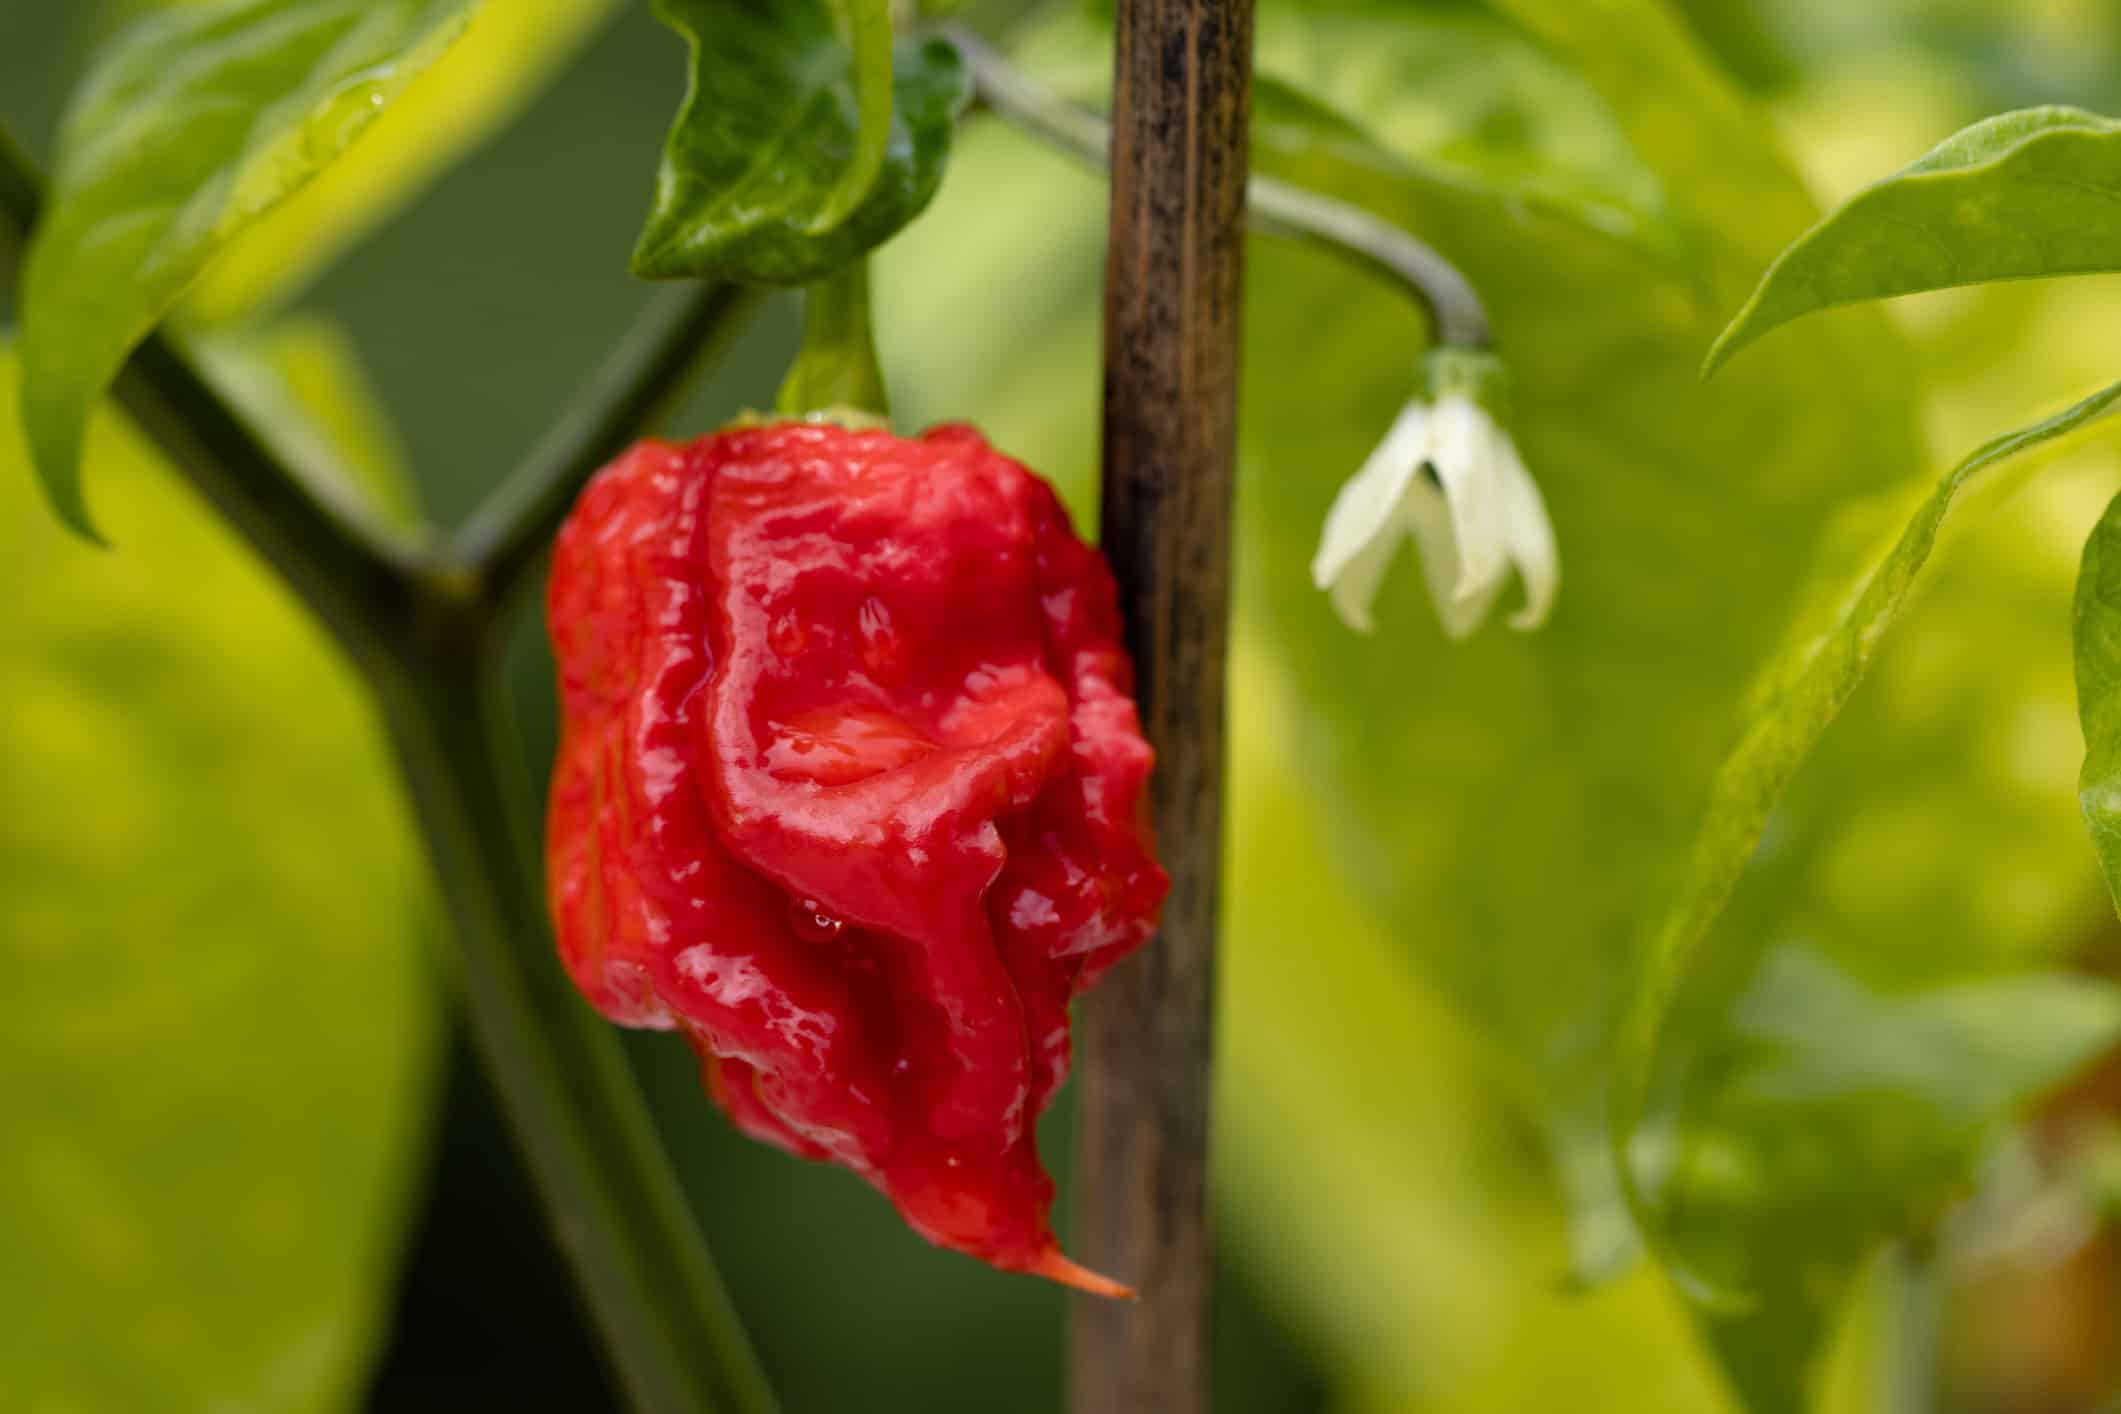 Closeup shot of Carolina Reaper chili pepper